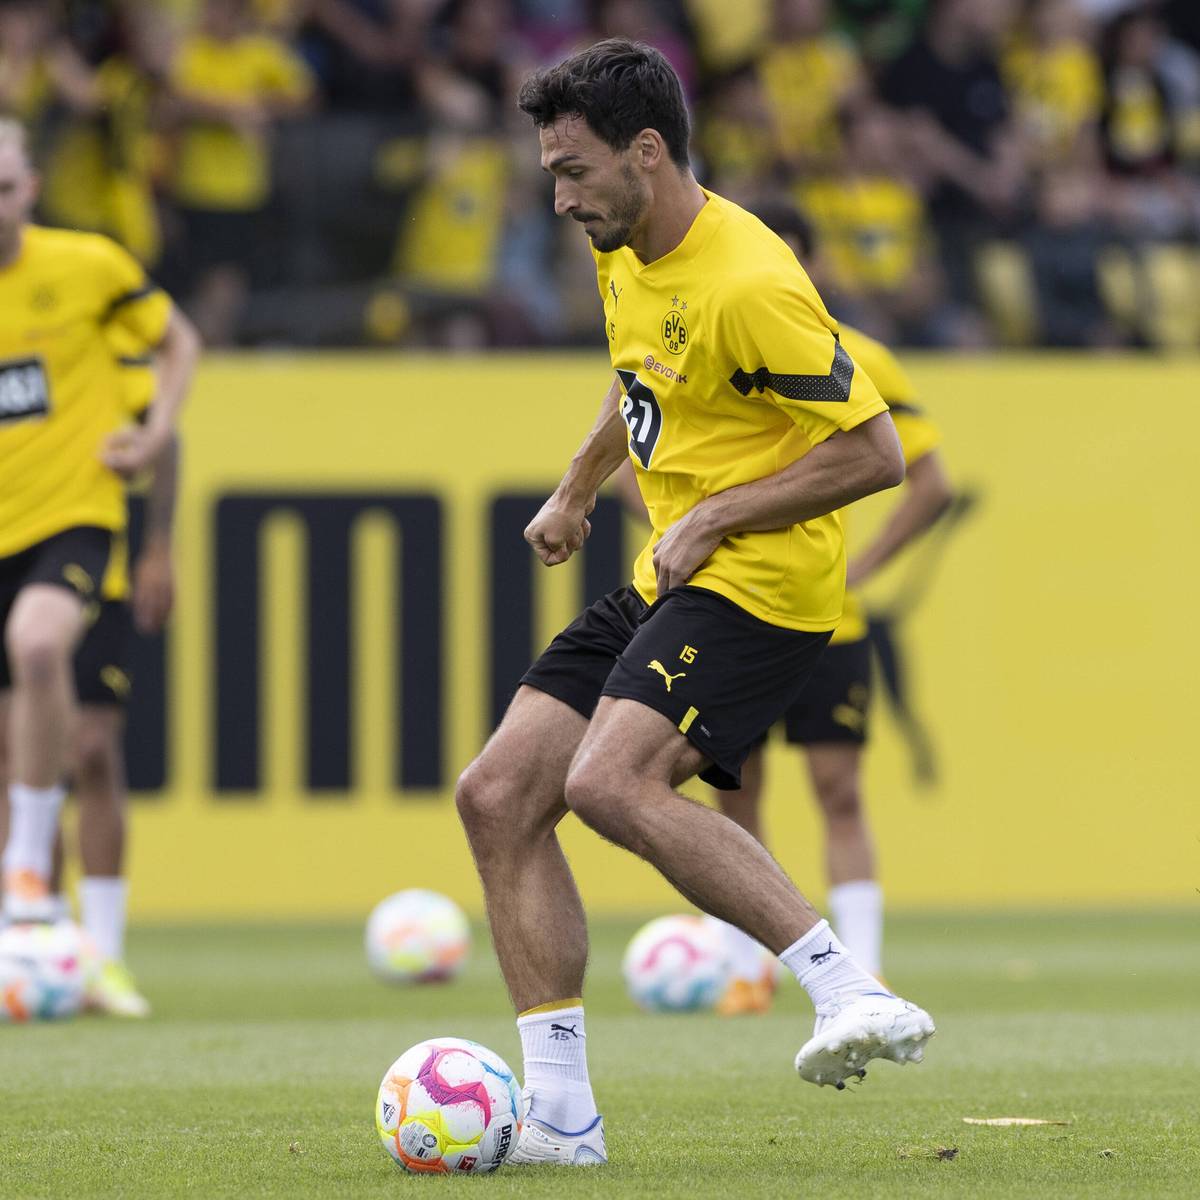 Mats Hummels wird bei Borussia Dortmund gegen namhafte Neuverpflichtungen um einen Stammplatz kämpfen müssen. Trotzdem zieht der Innenverteidiger ein positives Transferfazit und hat sich für die anstehende Saison viel vorgenommen.